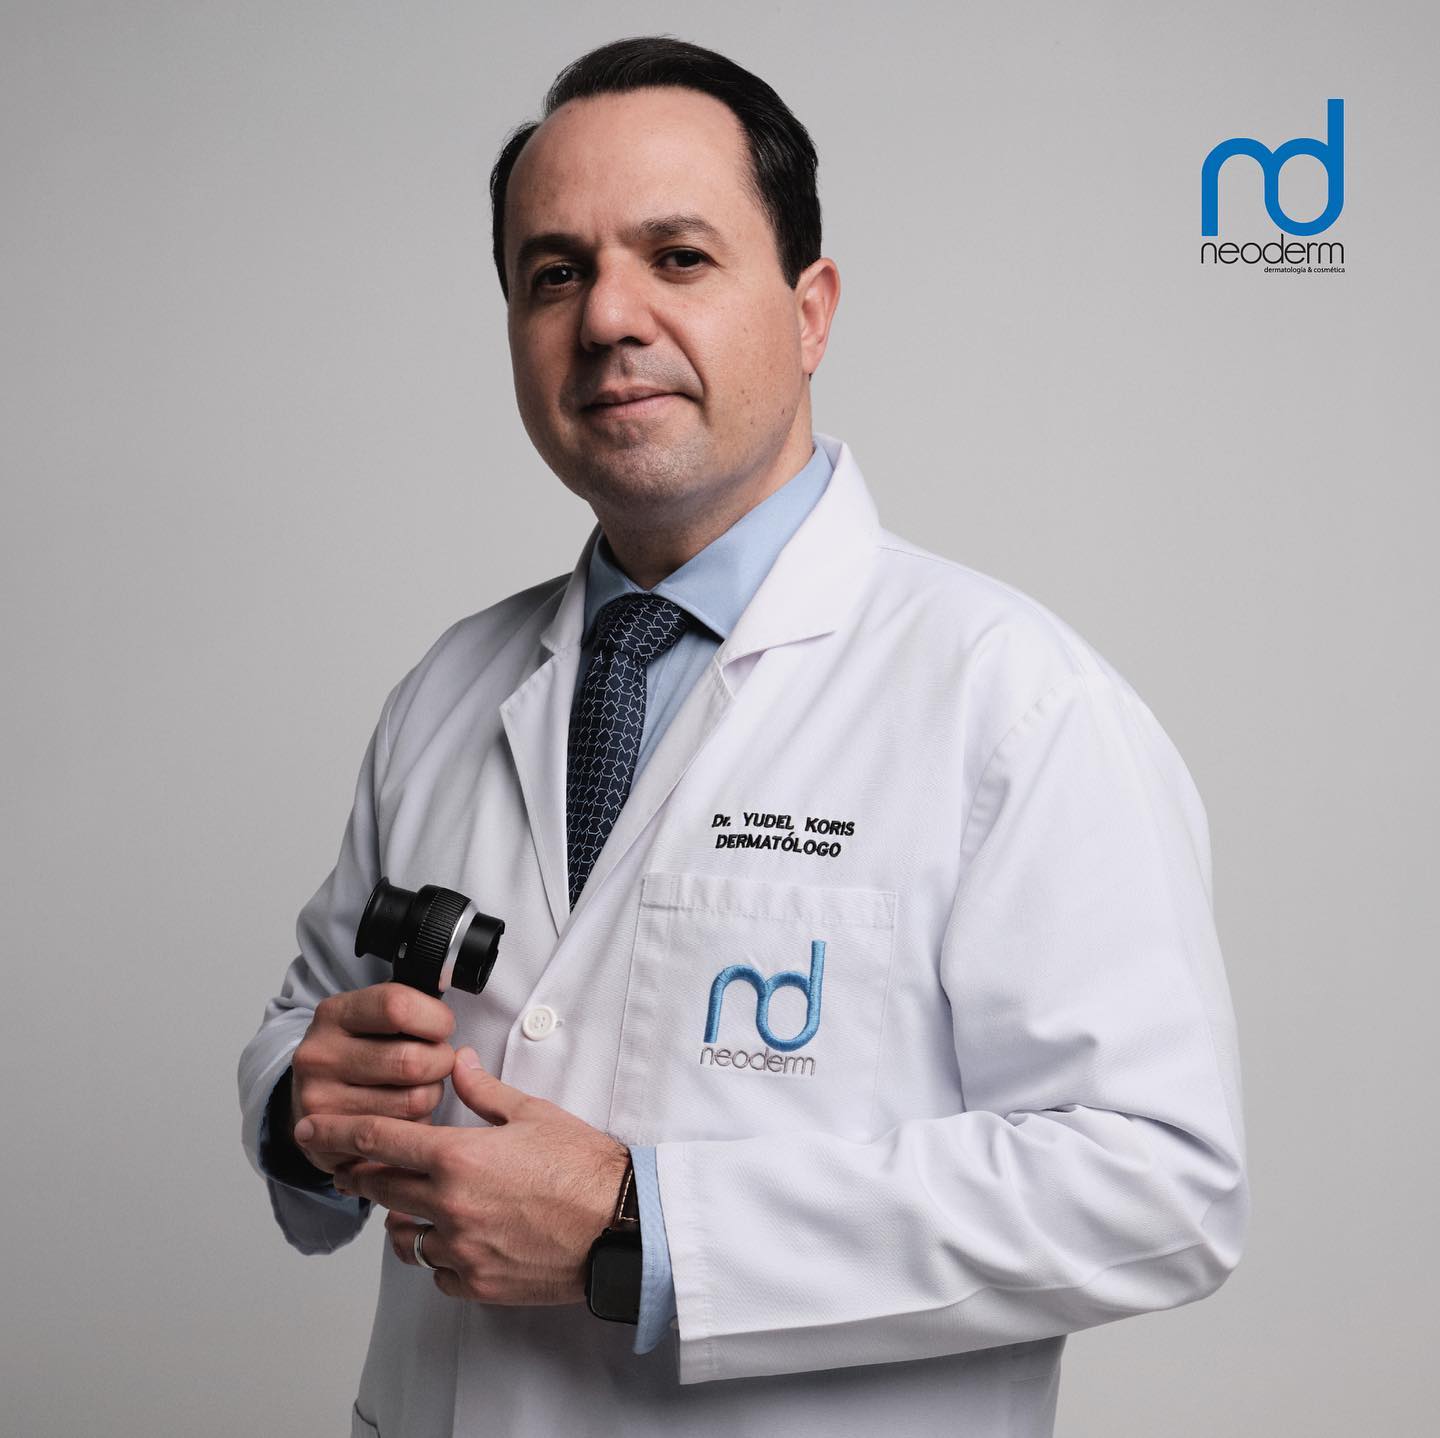 Dr. Yudel Koris - Neoderm - Dermatólogos Guatemala